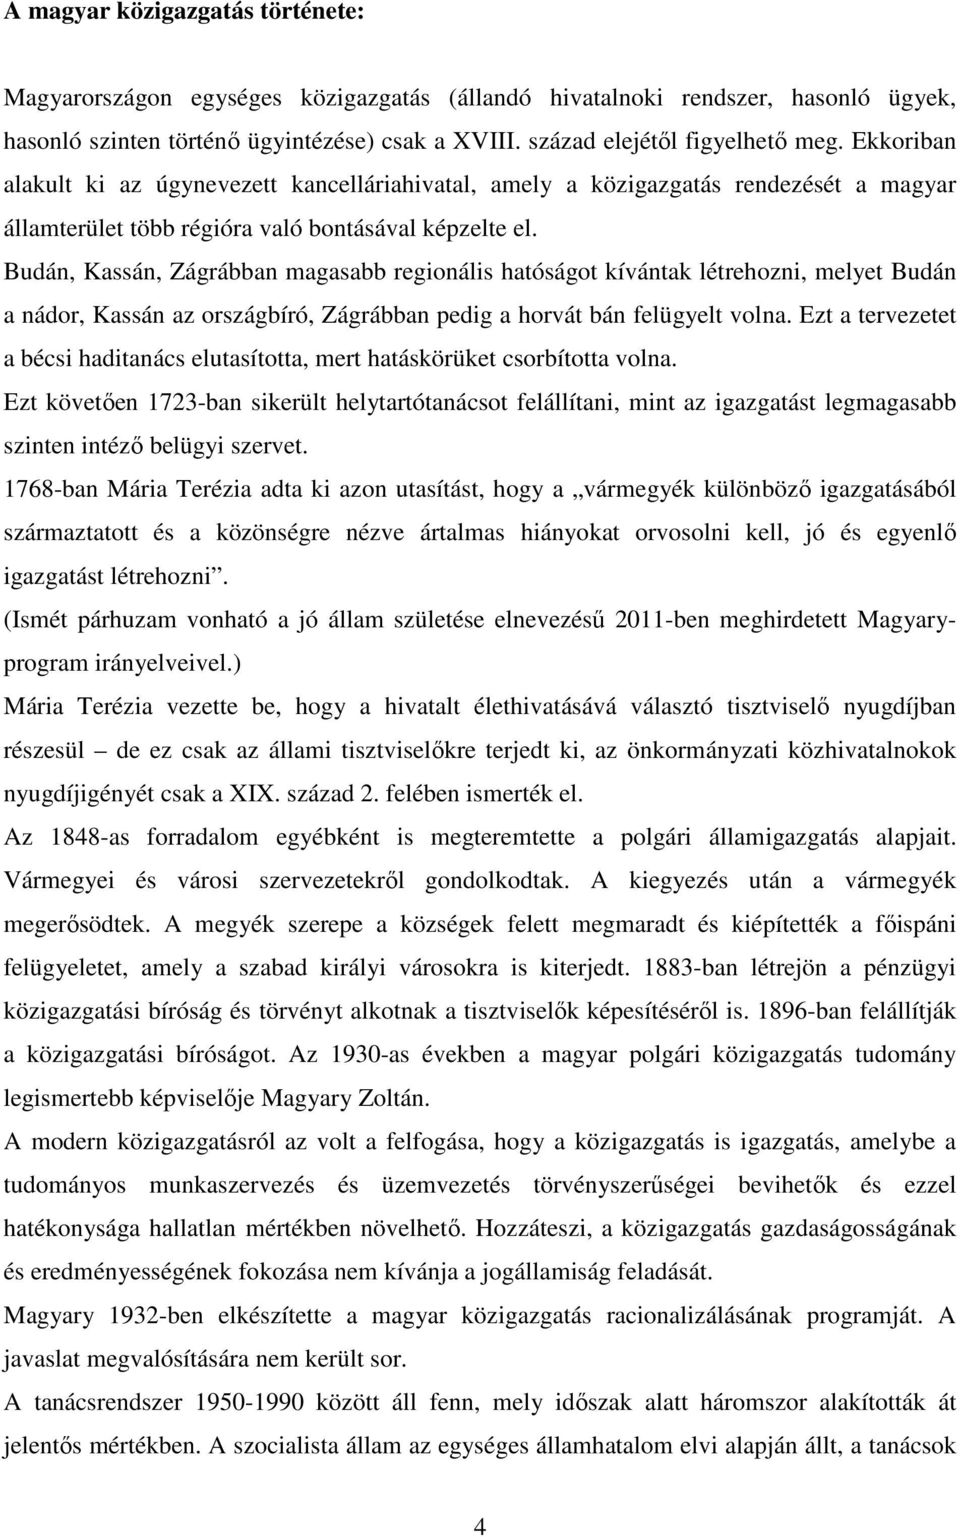 Budán, Kassán, Zágrábban magasabb regionális hatóságot kívántak létrehozni, melyet Budán a nádor, Kassán az országbíró, Zágrábban pedig a horvát bán felügyelt volna.